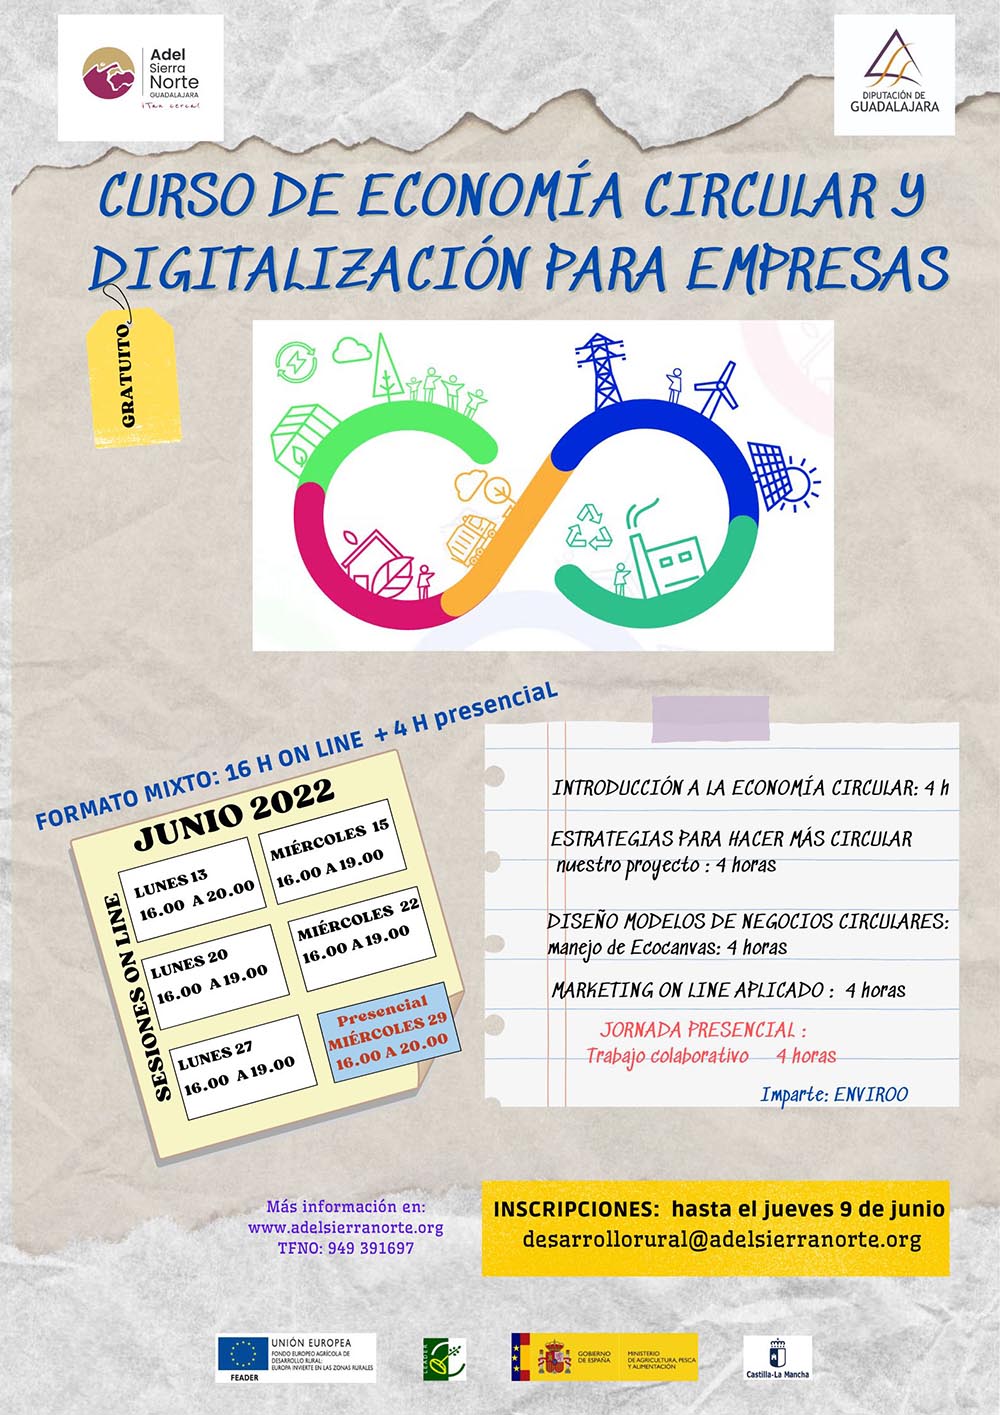 CURSO ADEL ECONOMÍA CIRCULAR y digitalización para empresas (1) - copia